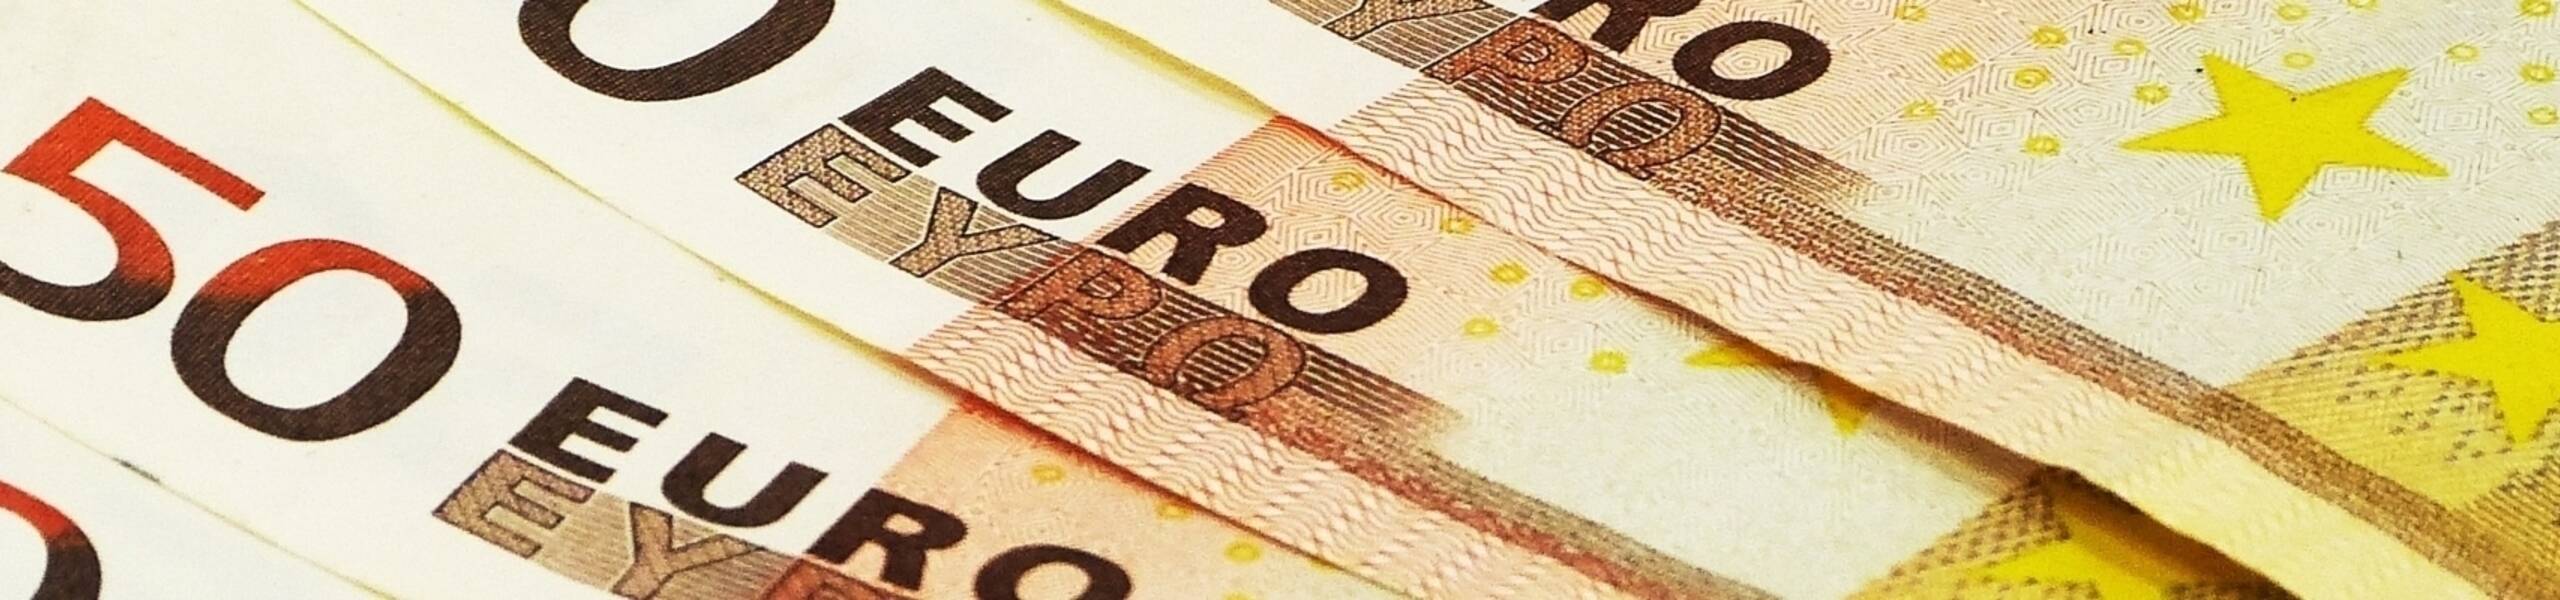 Alemanha: inflação cai para 1,5% em maio 